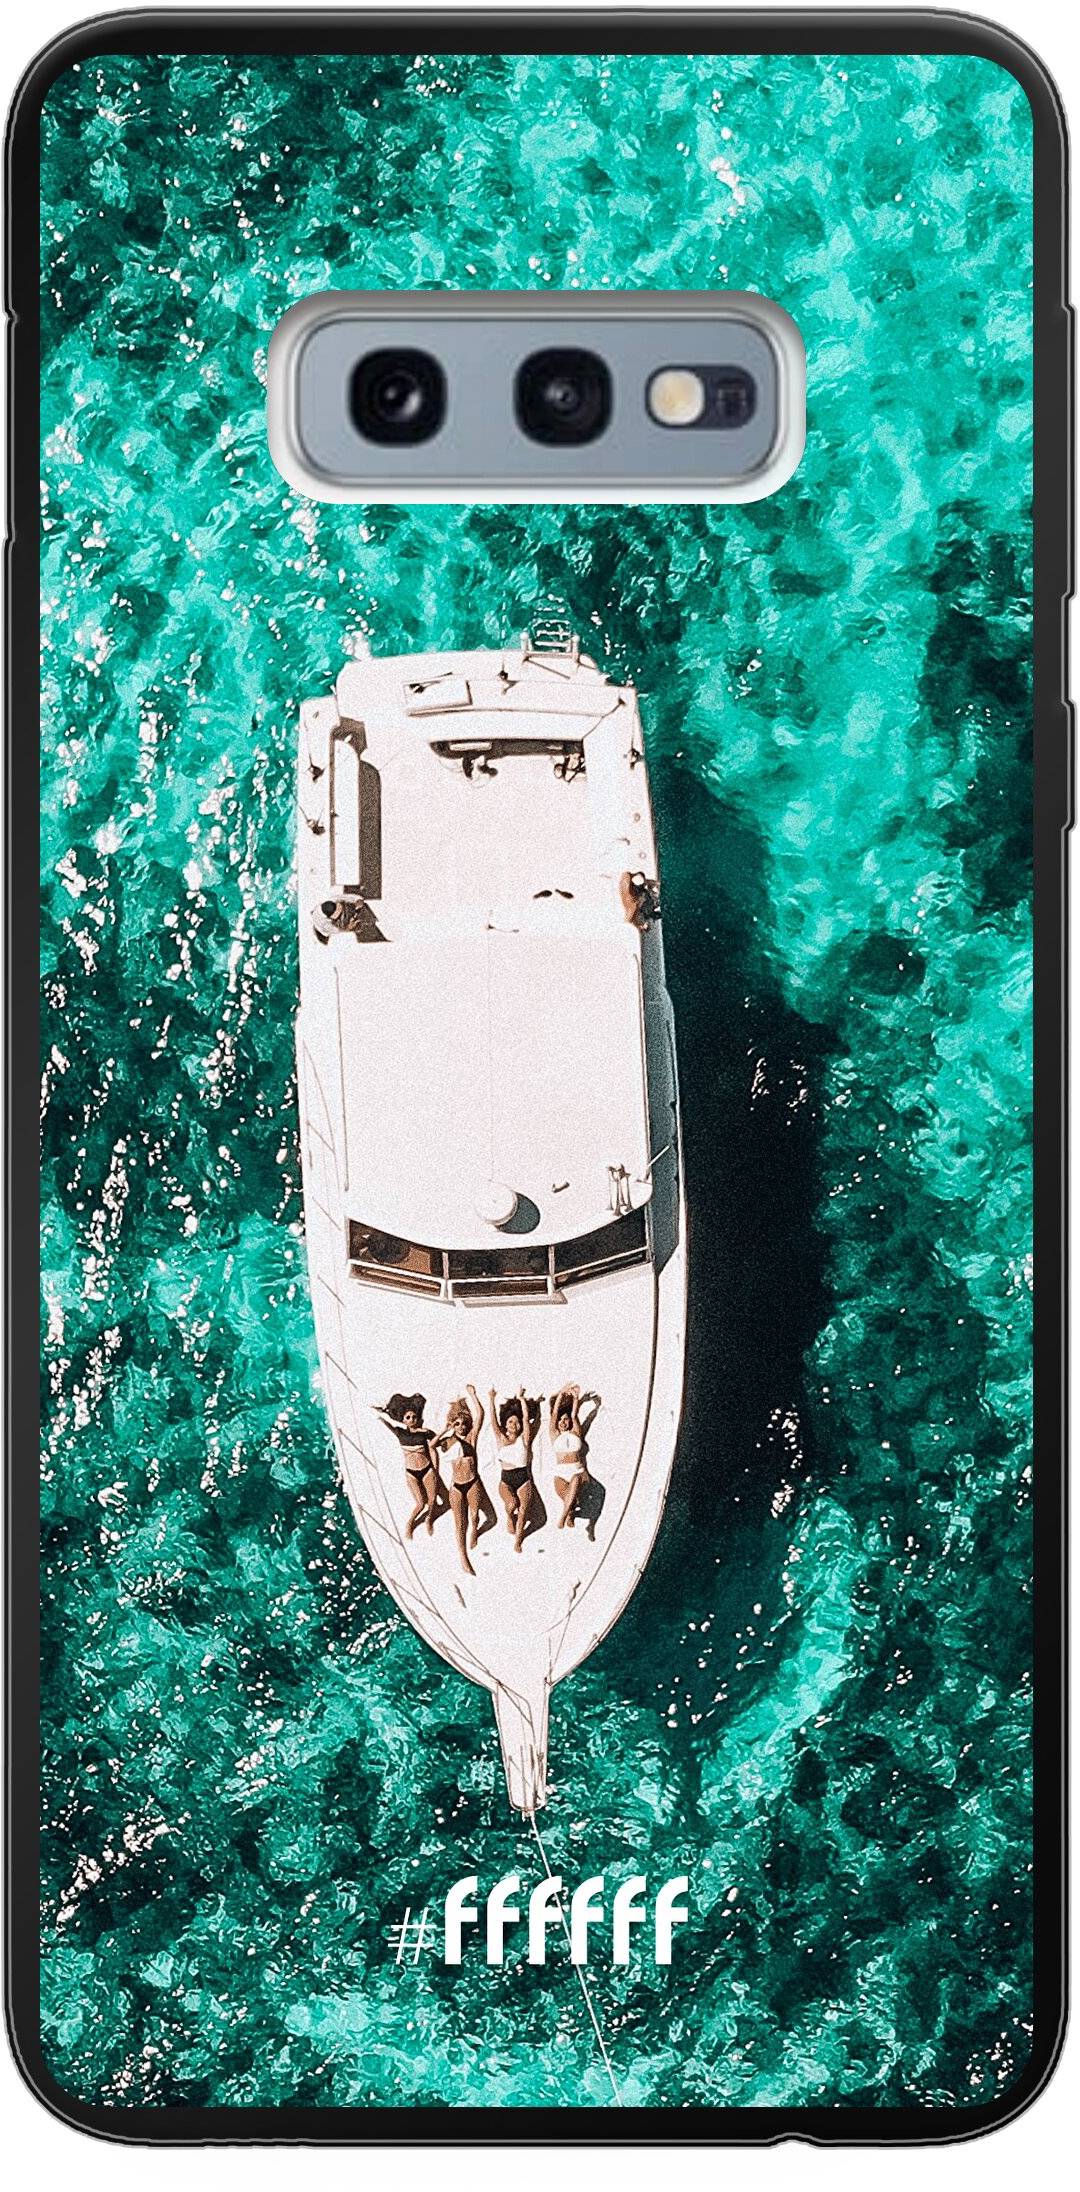 Yacht Life Galaxy S10e